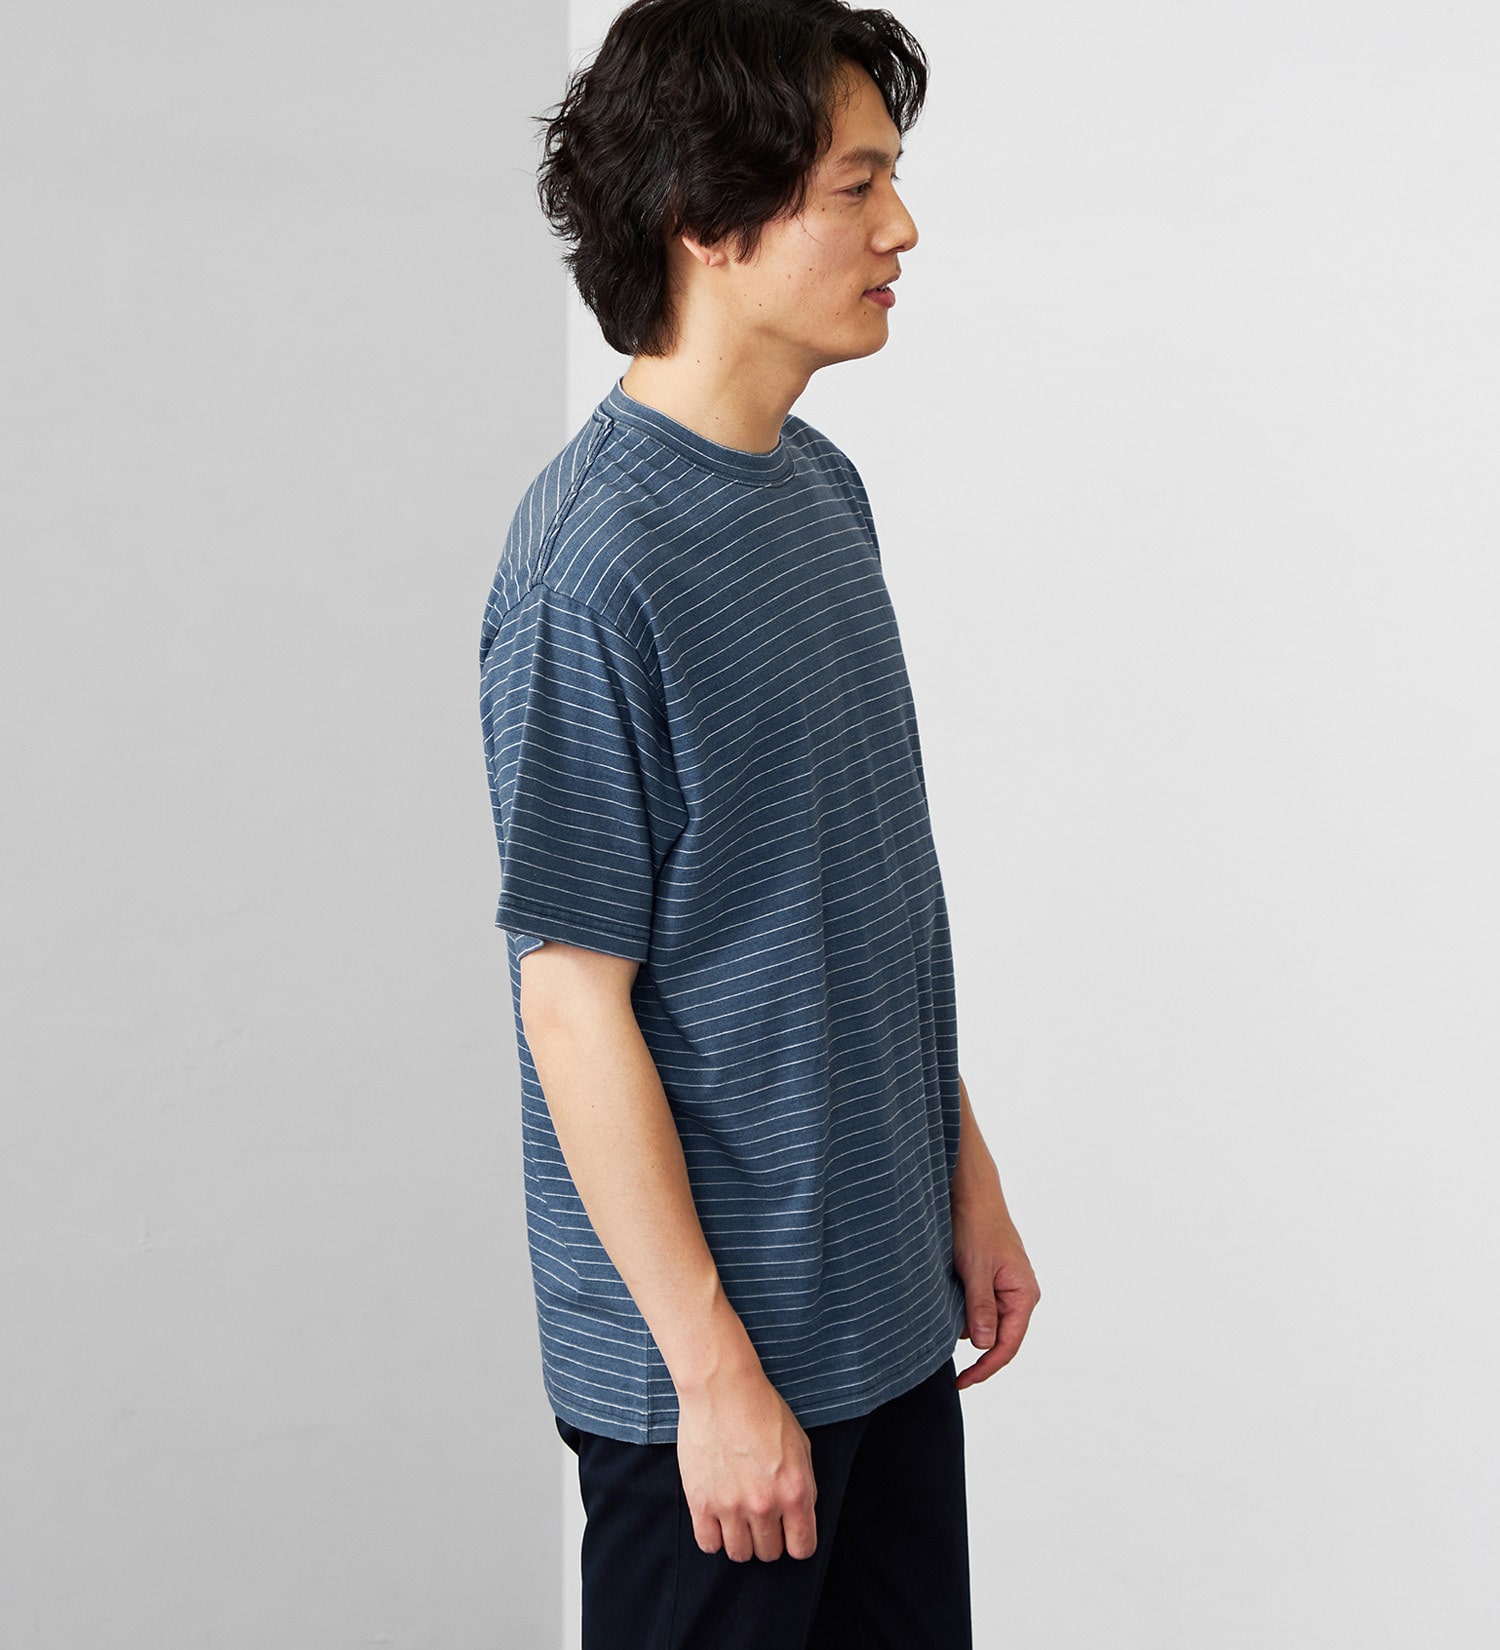 EDWIN(エドウイン)のインディゴボーダー半袖Tシャツ|トップス/Tシャツ/カットソー/メンズ|中色ブルー